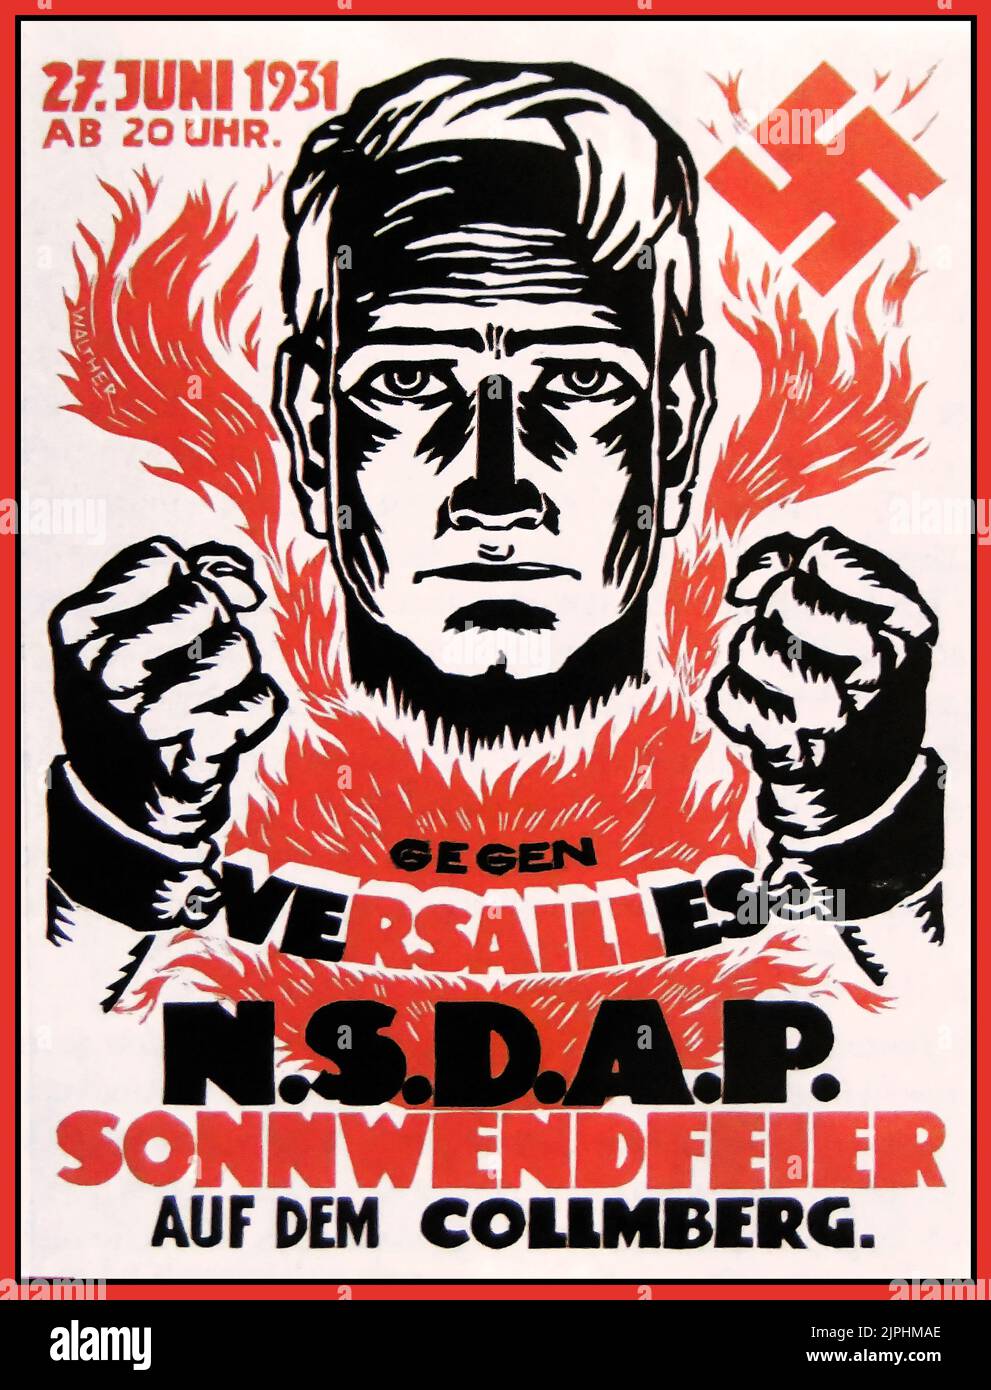 Affiche nazie vintage 1931 « Gegen Versailles » (contre Versailles). Une affiche publicitaire pour un festival de mi-été organisé le 27 juin 1931 par le NSDAP sur Collmberg près de Leipzig. Allemagne nazie Banque D'Images